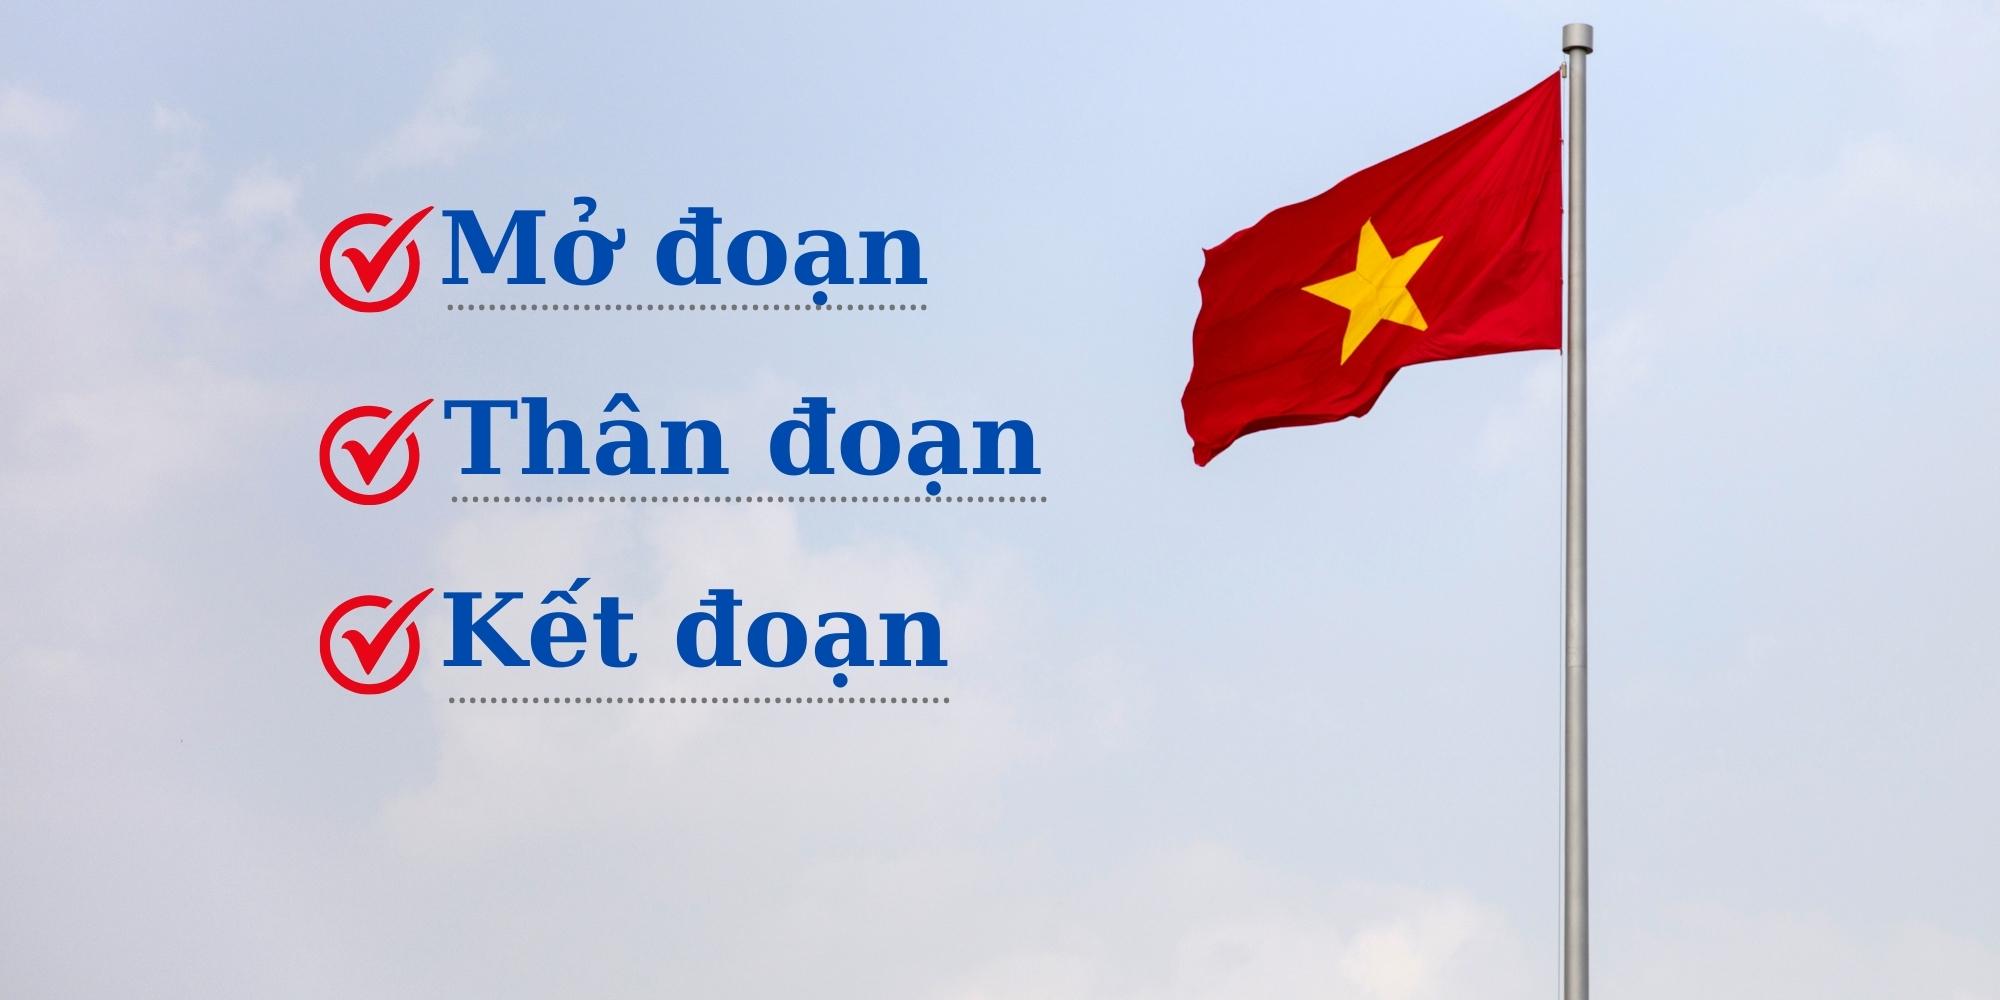 Dàn ý bài viết giới thiệu về Việt Nam nên có 3 phần